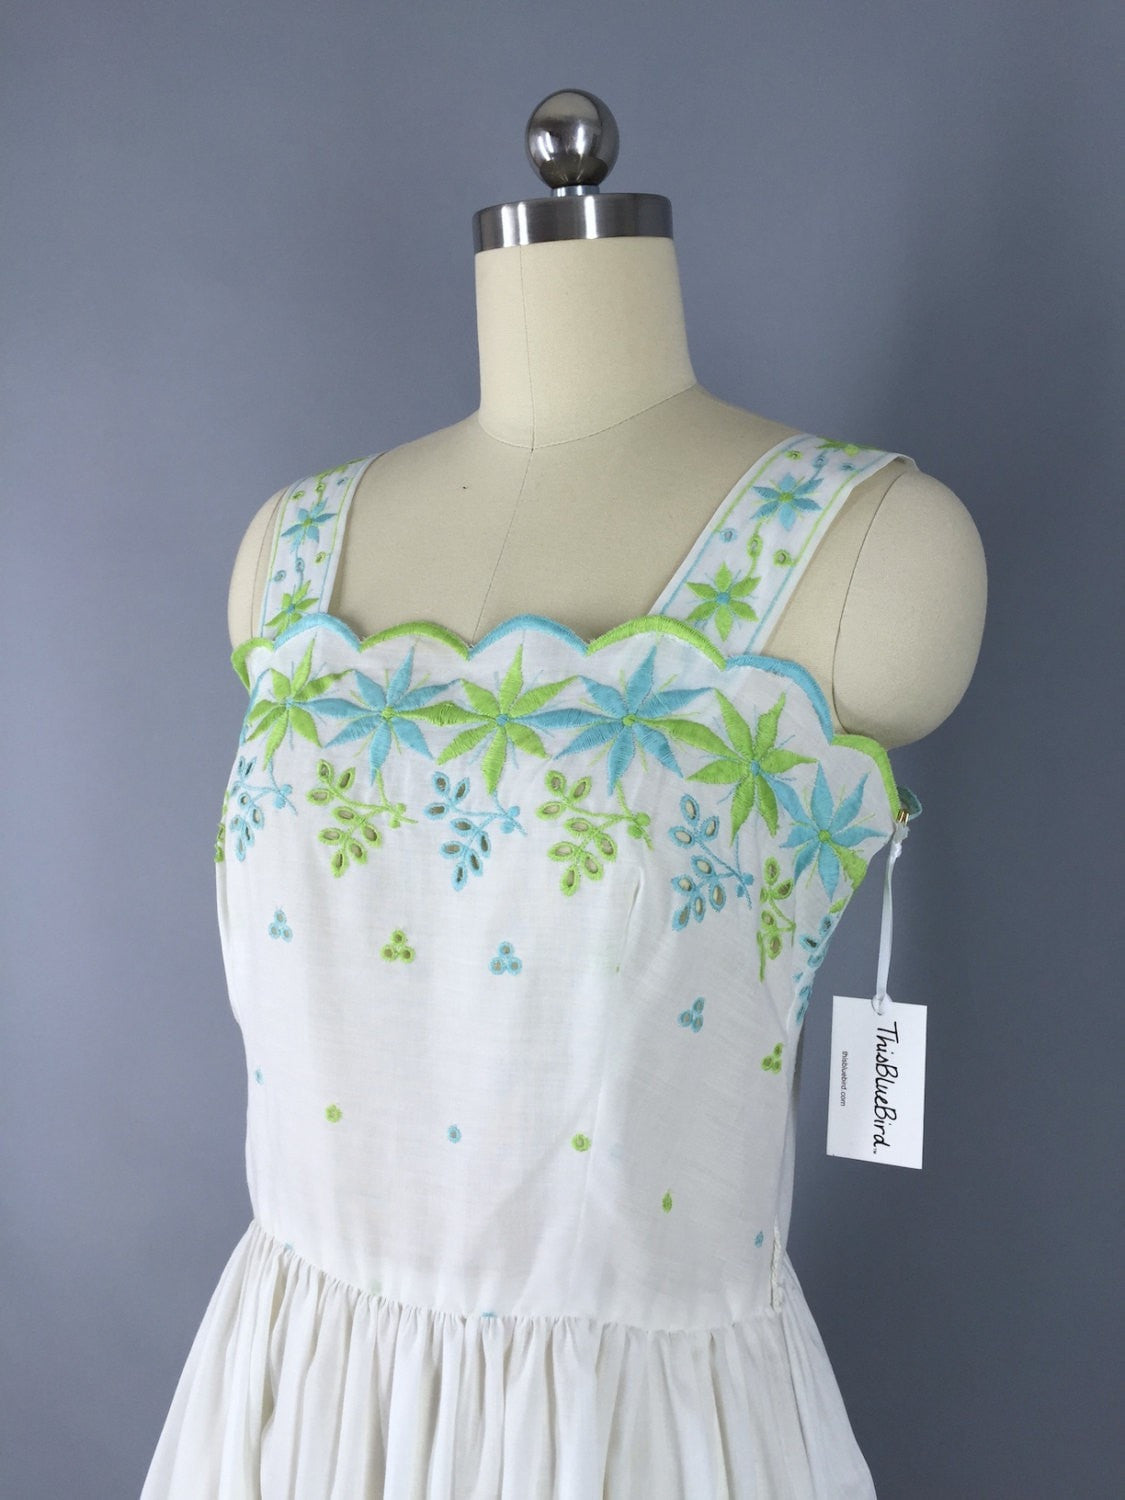 Vintage 1970s Dress / White Cotton Eyelet Dress - ThisBlueBird